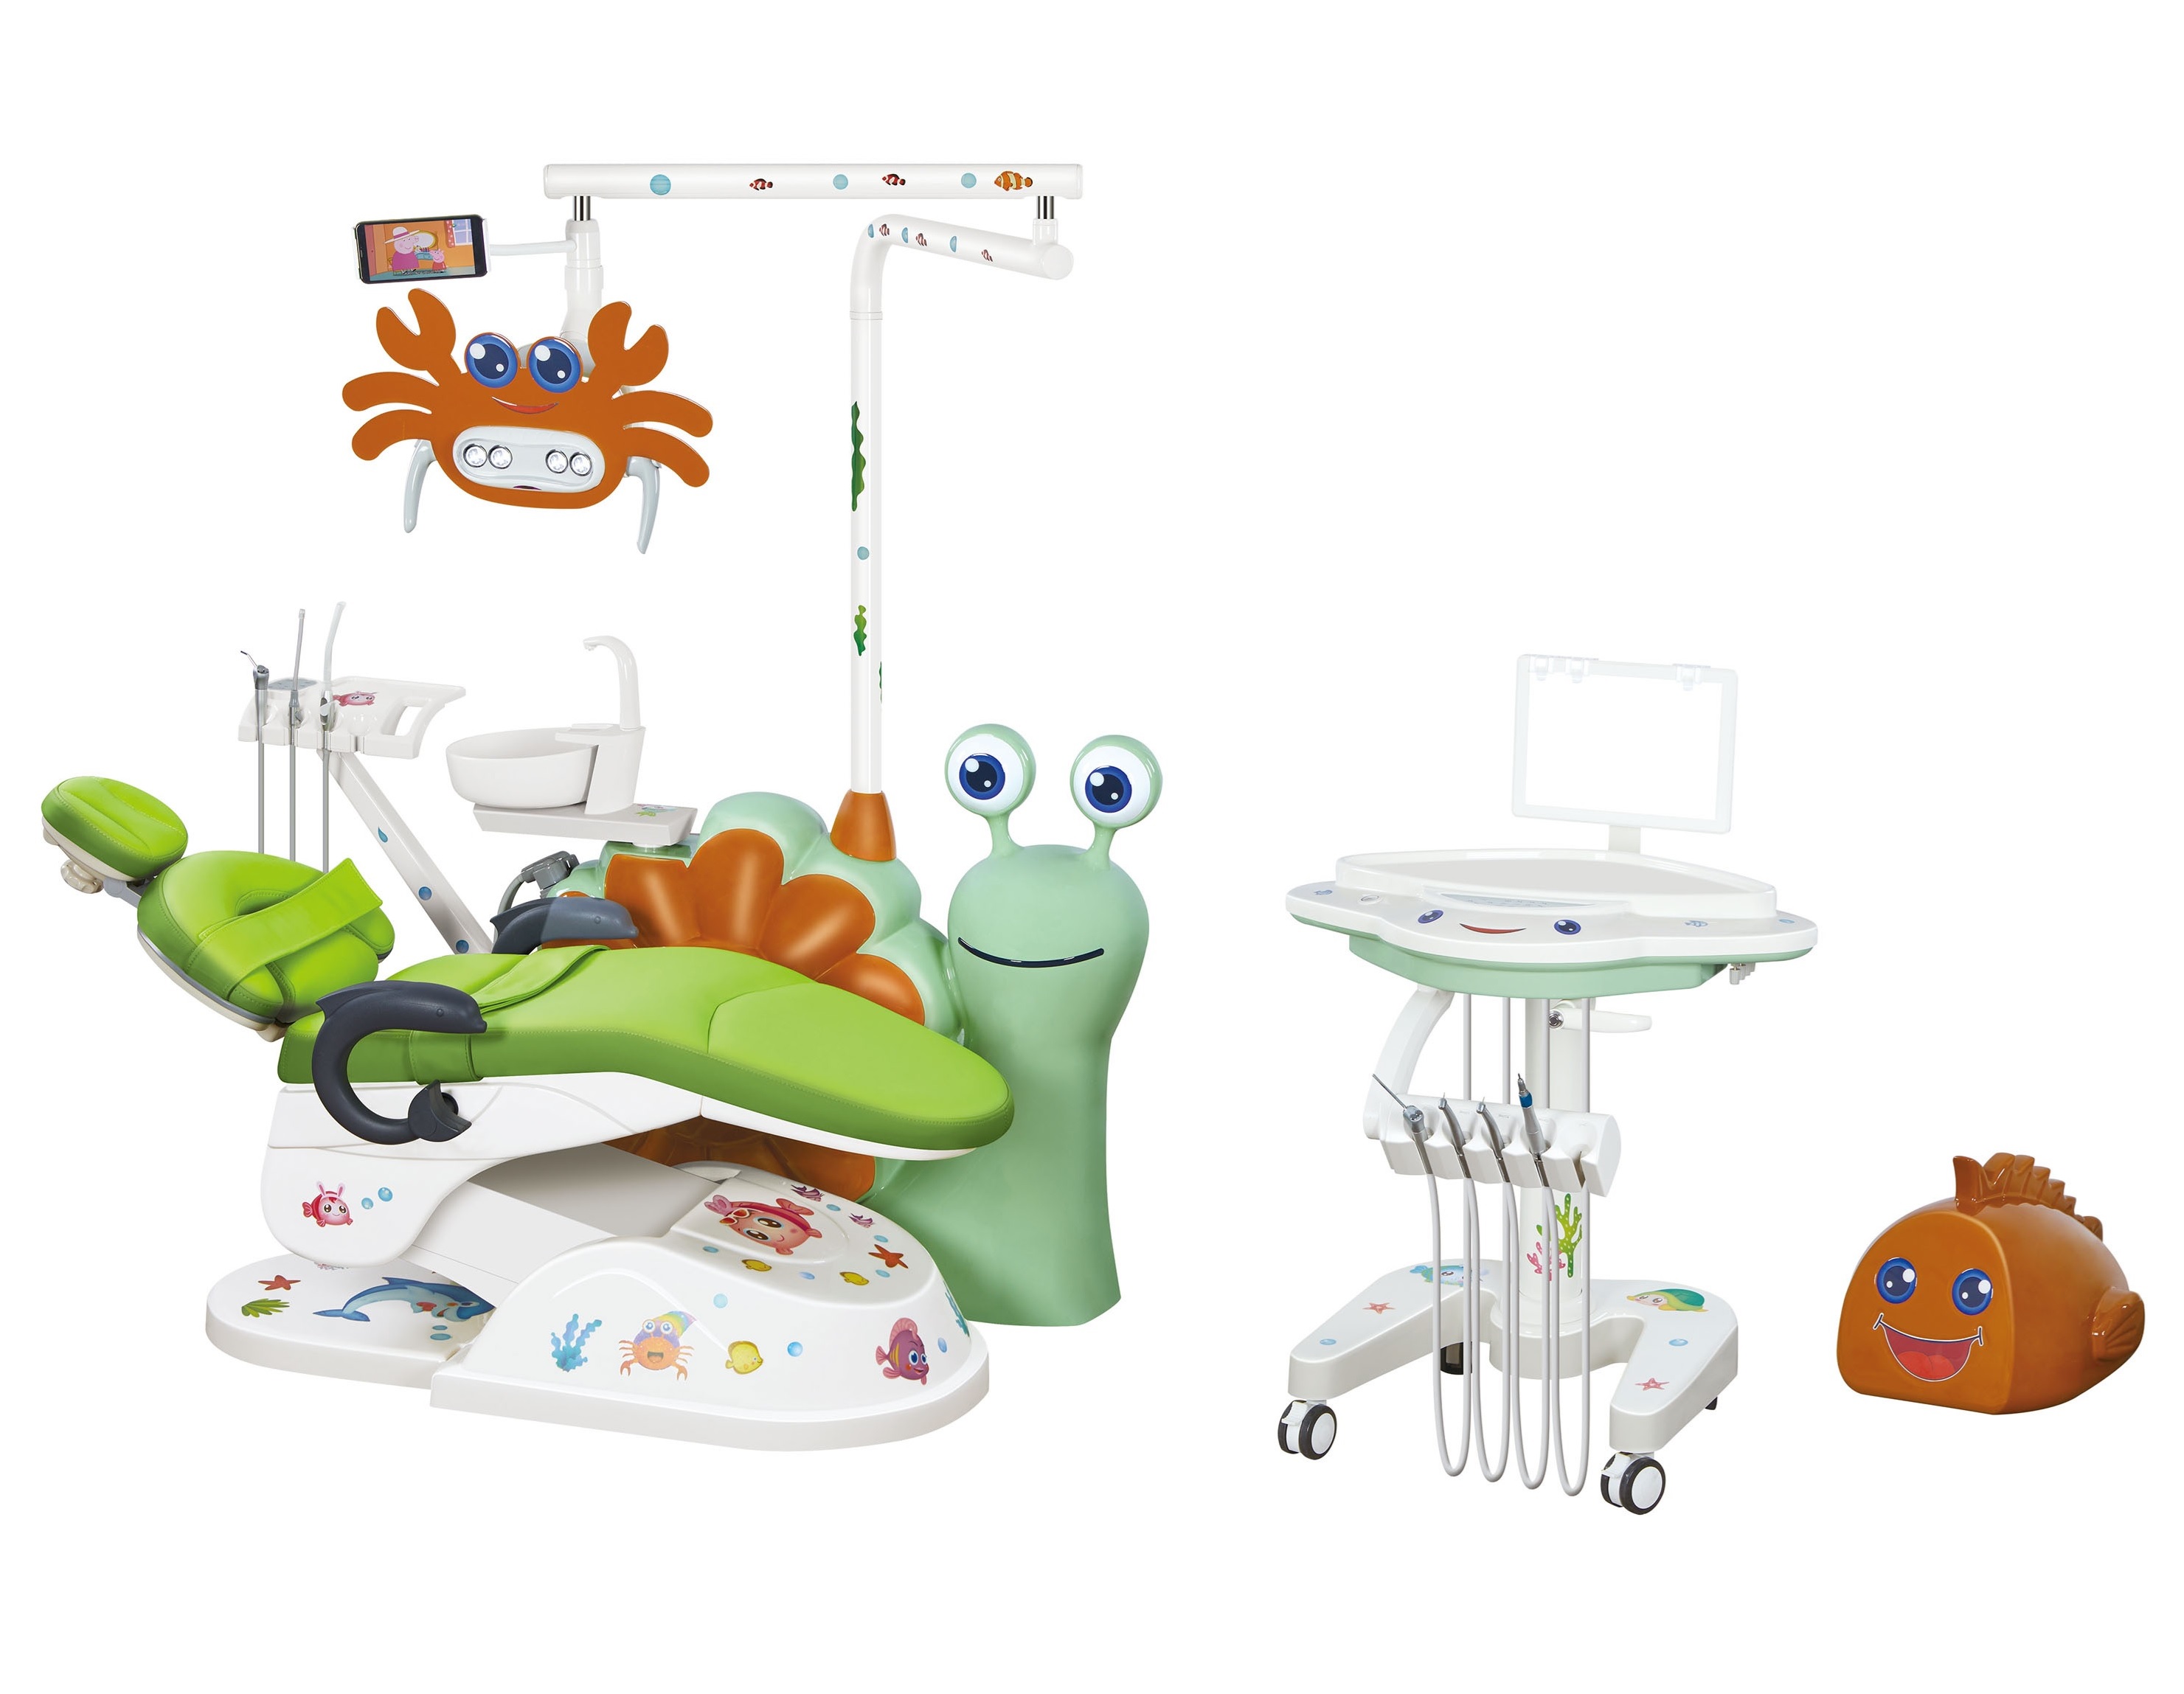 Hệ thống ghế máy Nha khoa cho trẻ em với thiết kế rất ngộ nghĩnh